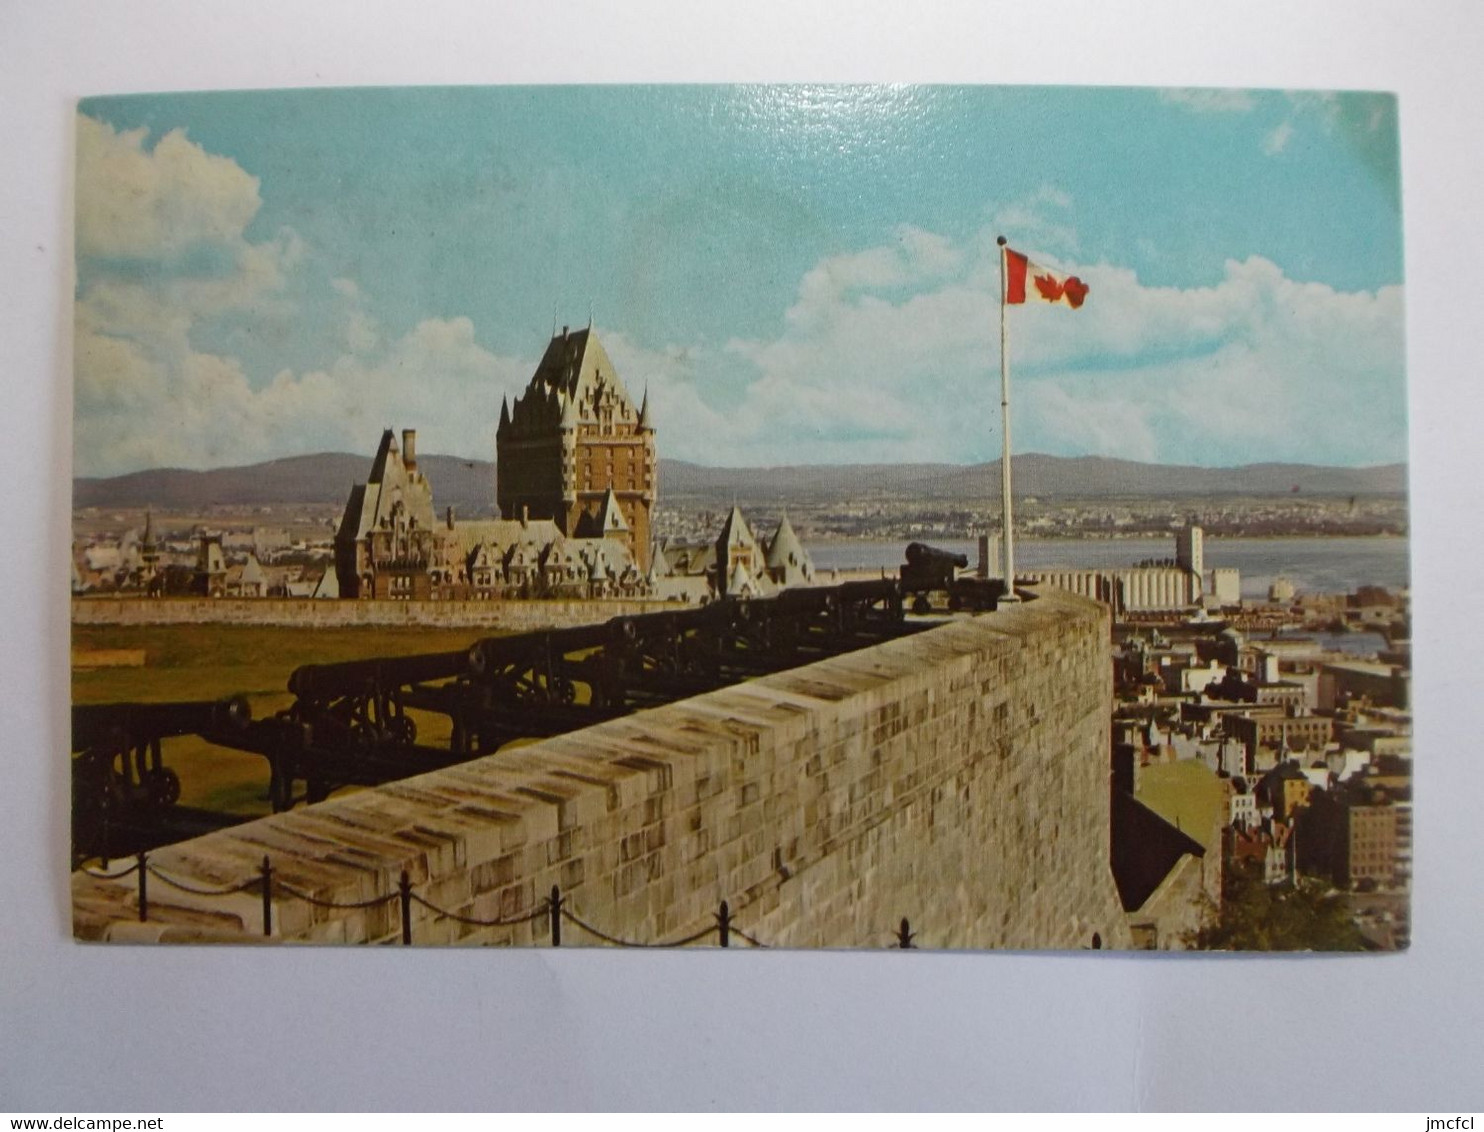 QUEBEC A Sight Of Unsurpassed Grandeur Is The View From" La Citadelle" - Québec - La Citadelle